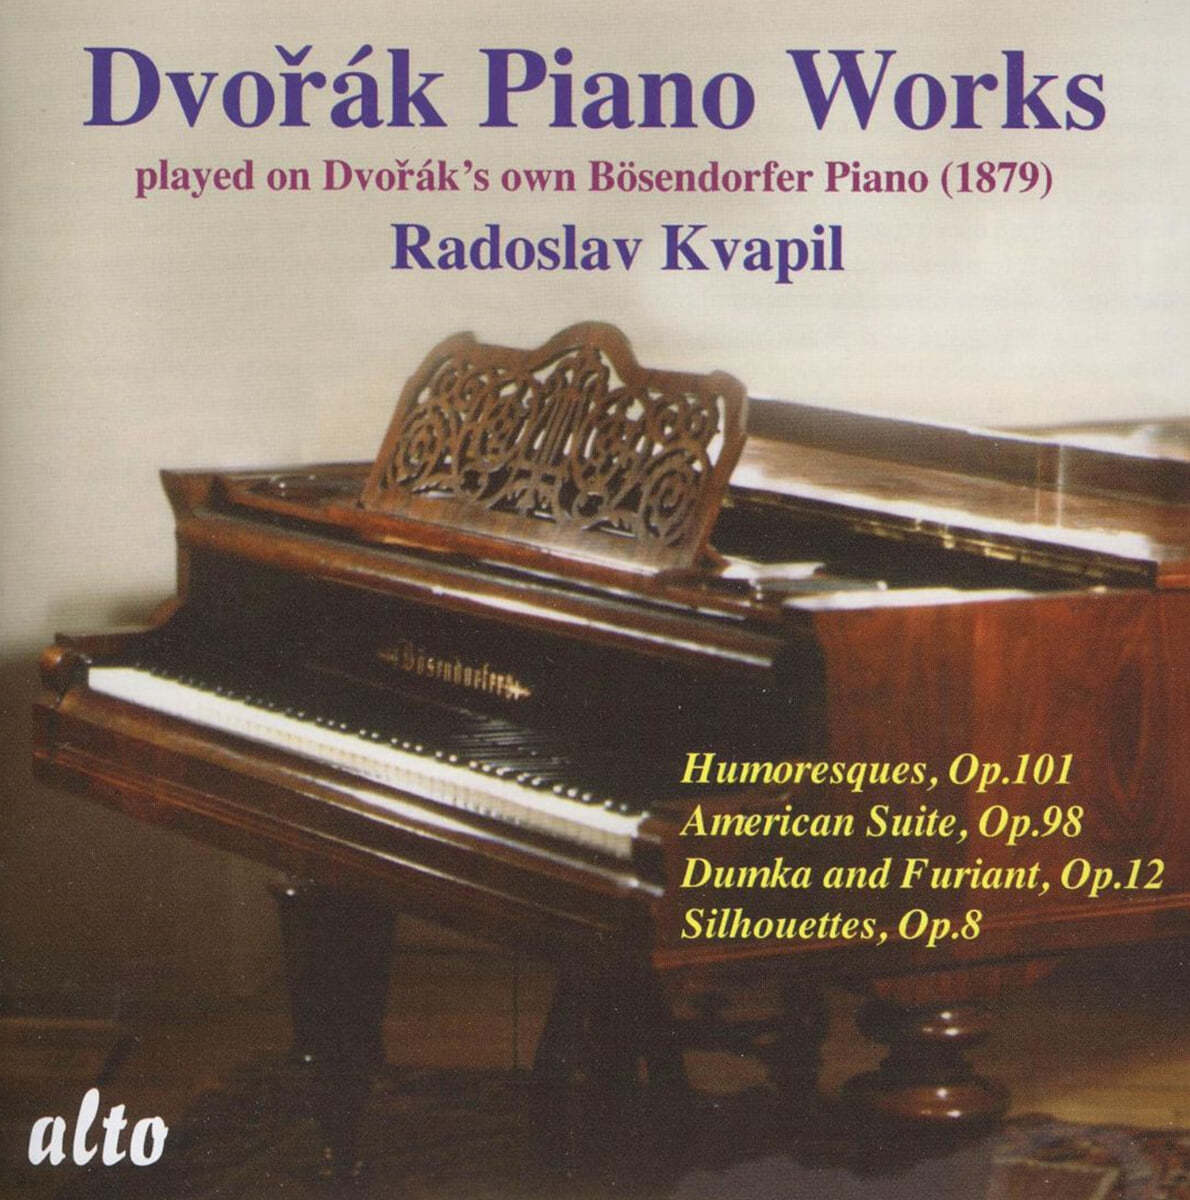 드보르작의 피아노로 연주한 드보르작 작품집 (Dvorak: Piano Works played on Dvorak&#39;s own Piano Bosendorfer 1879)